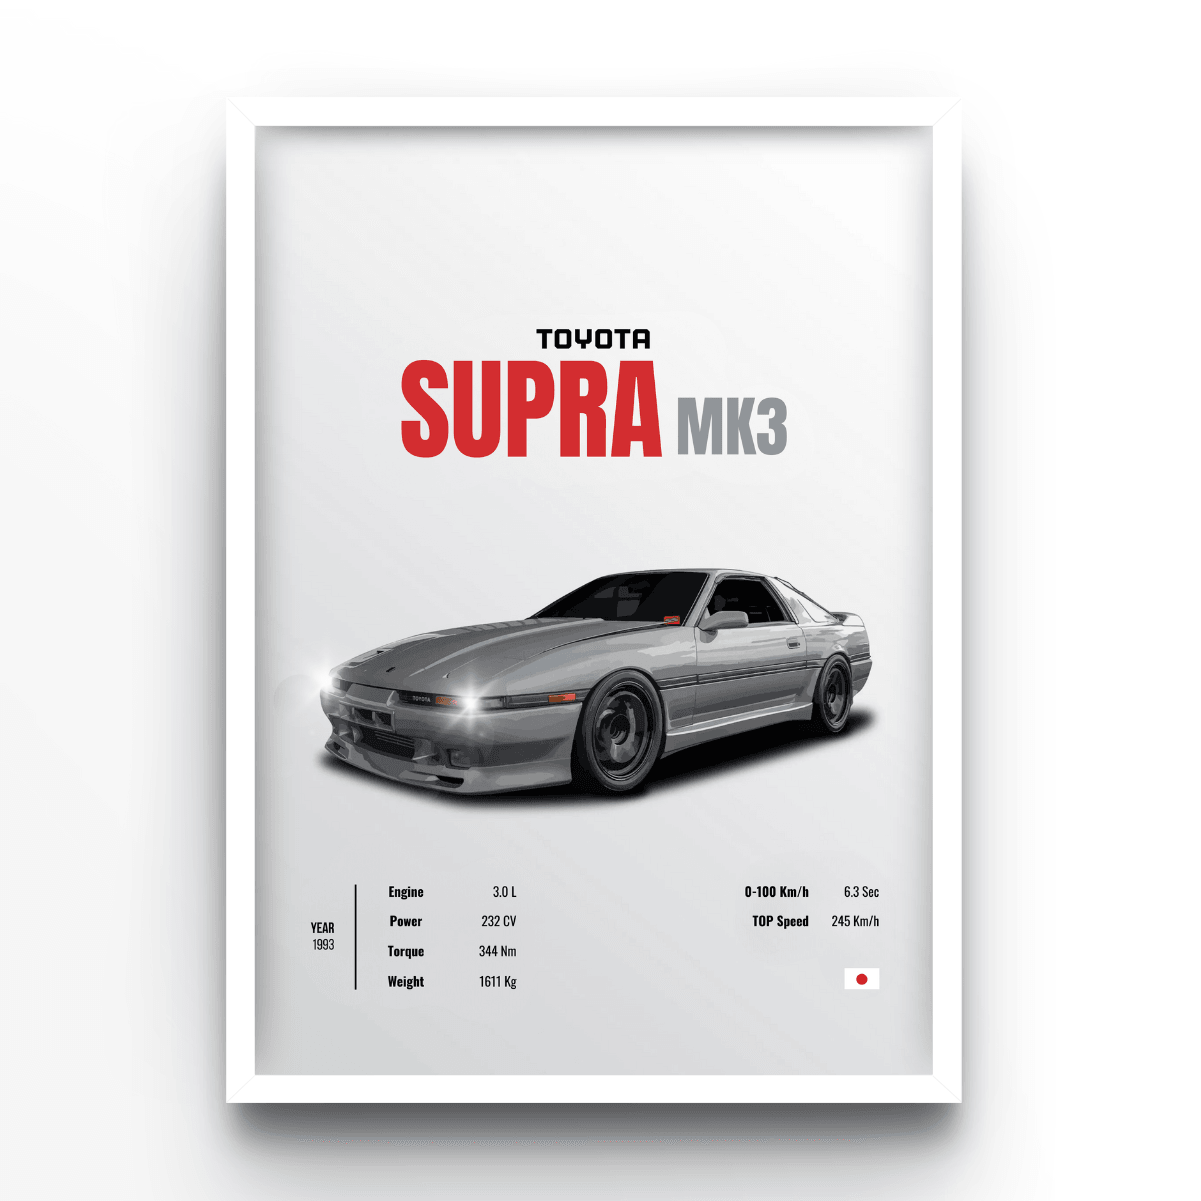 Supra MK3 - A4, A3, A2 Posters Base - Poster Print Shop / Art Prints / PostersBase